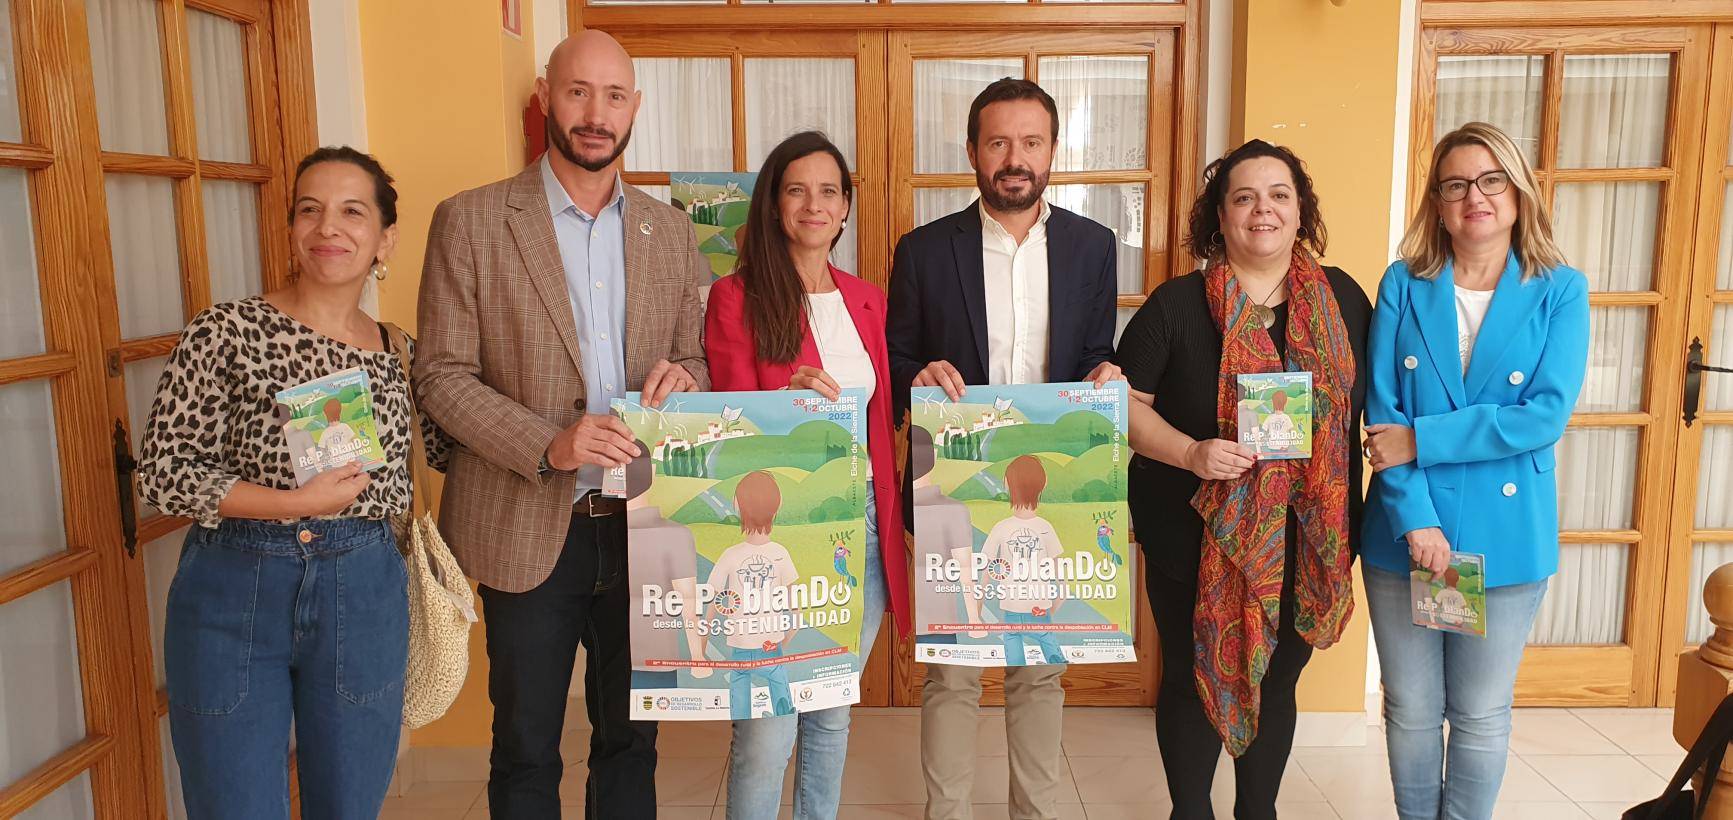 El Gobierno de Castilla-La Mancha impulsa el II Encuentro Re-Poblando desde la Sostenibilidad “como ejemplo para hacer frente a la despoblación desde la Agenda 2030”